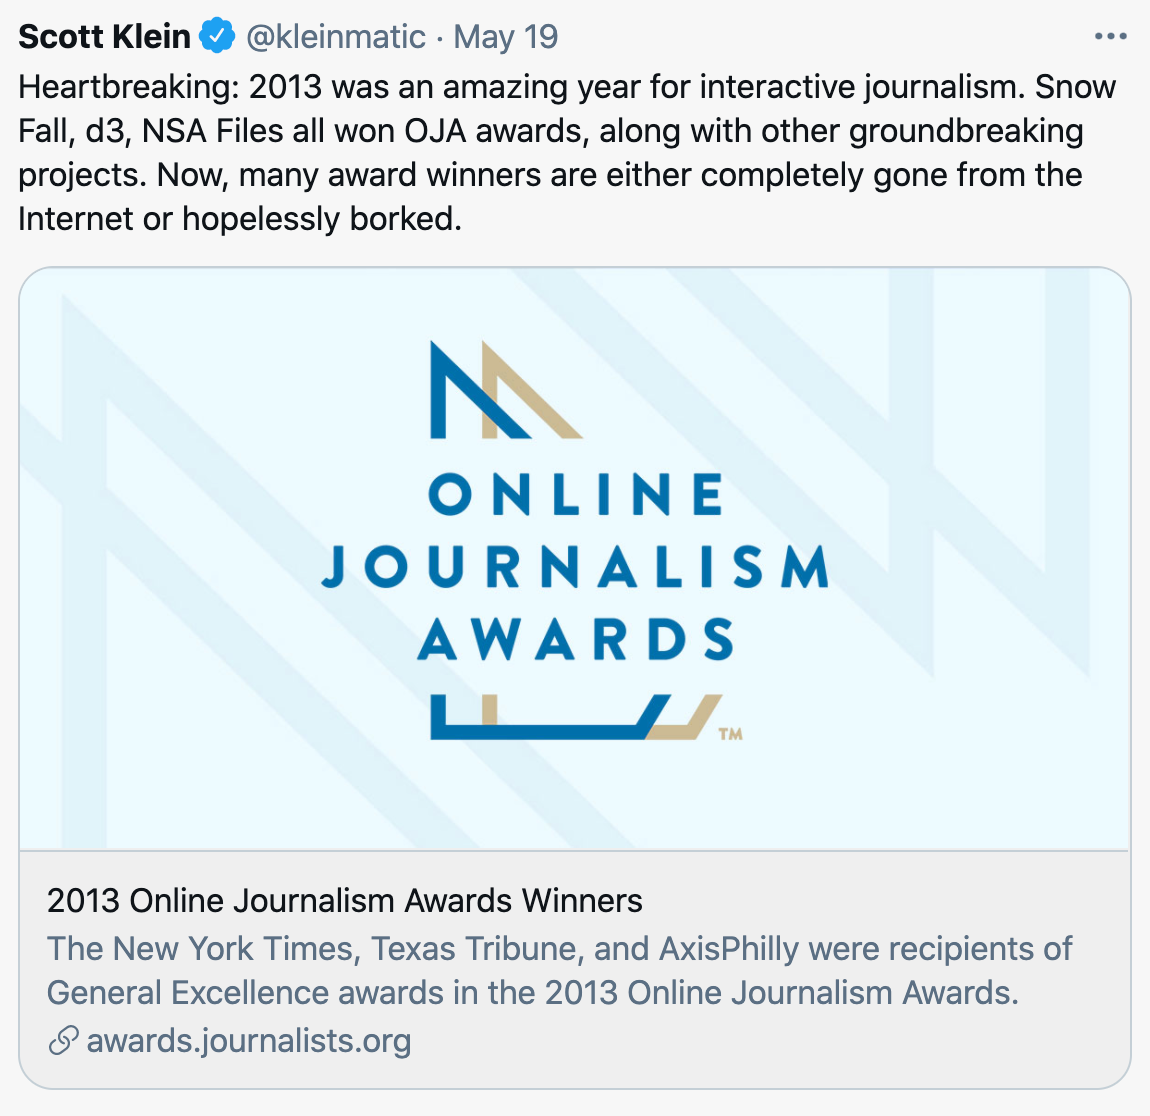 Scott Klein tweet about Online Journalism Awards